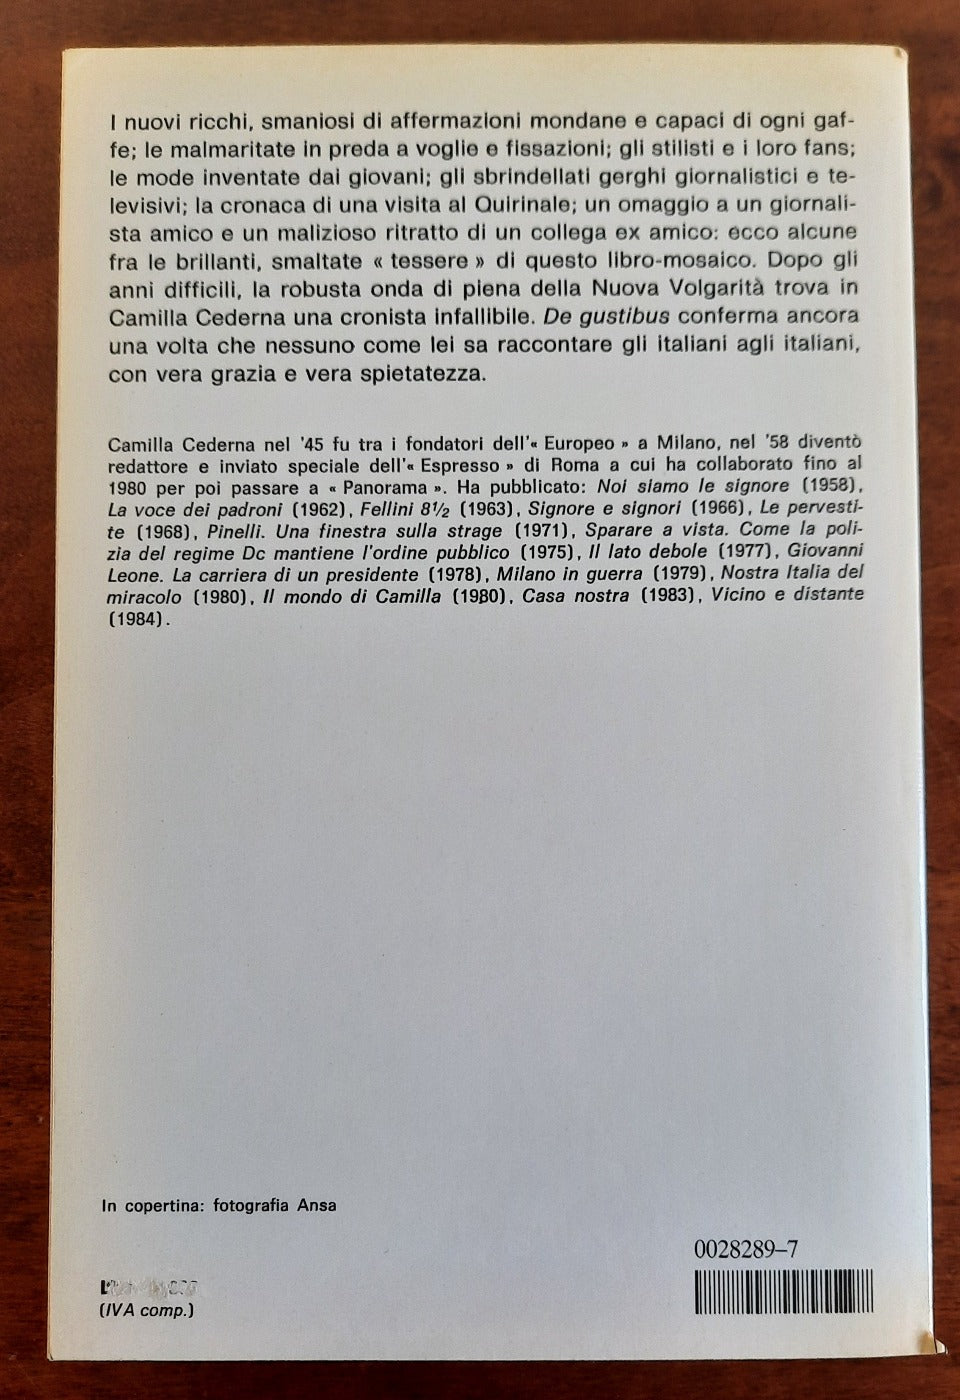 De gustibus - Mondadori - 1986